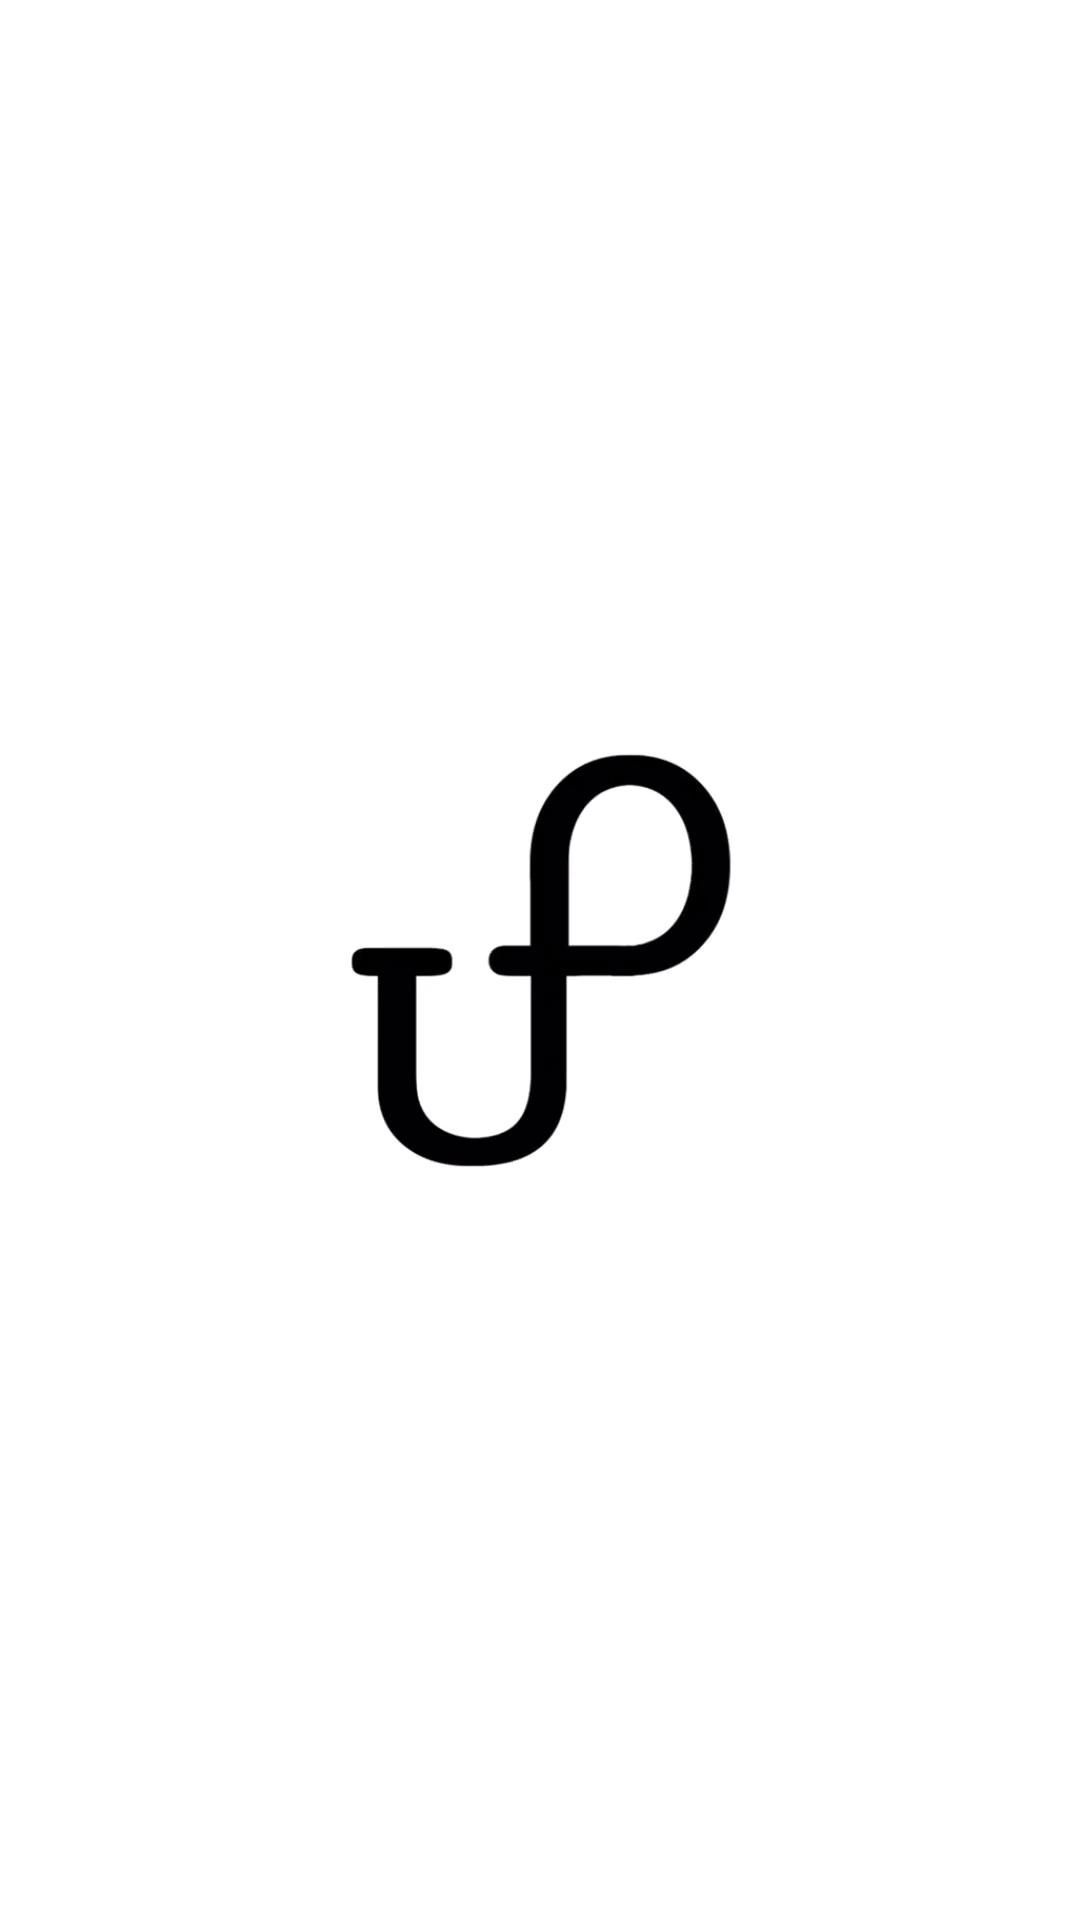 About U.P. - About U.P. -   18 unique fitness Logo ideas